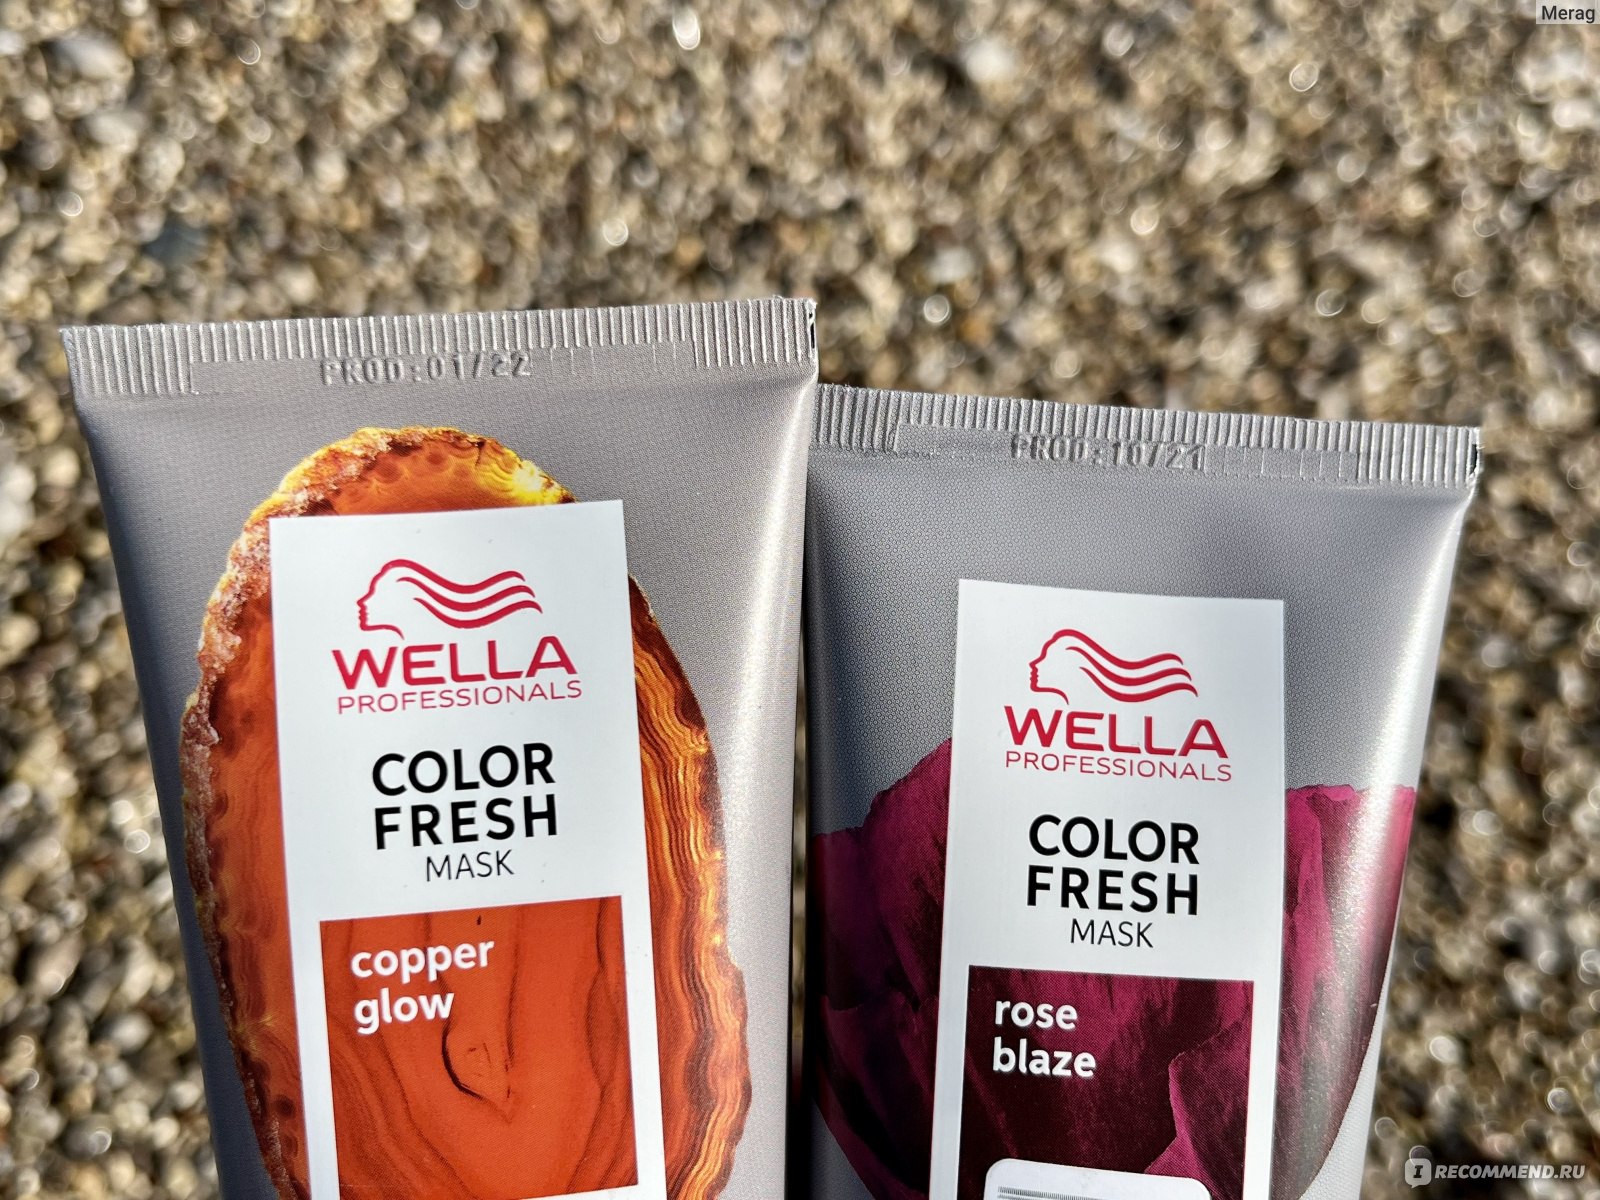 Фреш маска отзывы. Маска Wella professional Color Fresh cool Espresso. Wella Color Fresh Mask отзывы.